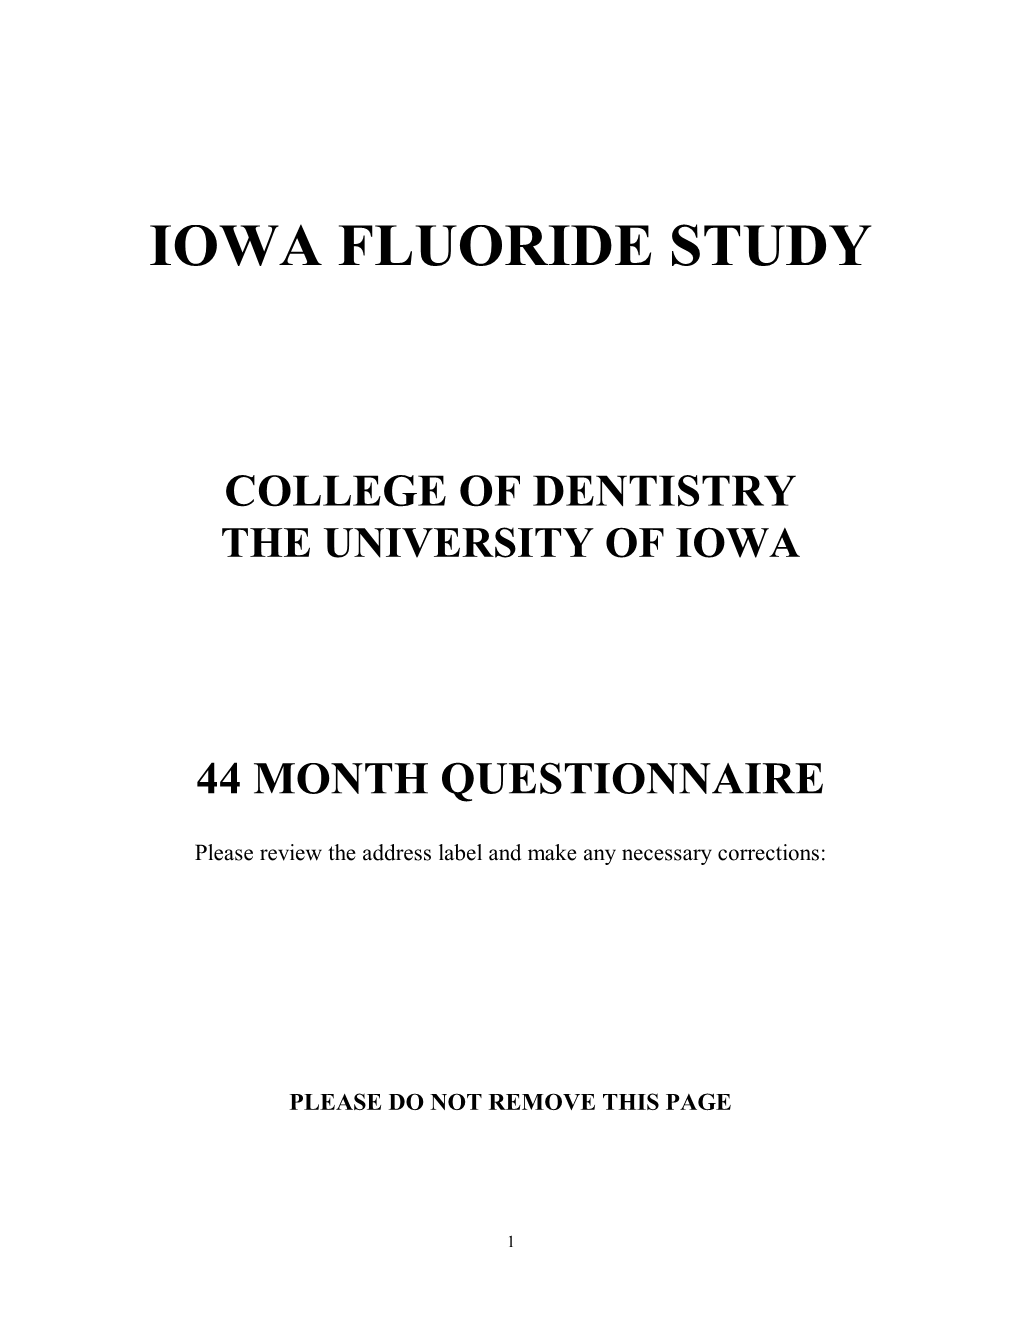 Iowa Fluoride Study